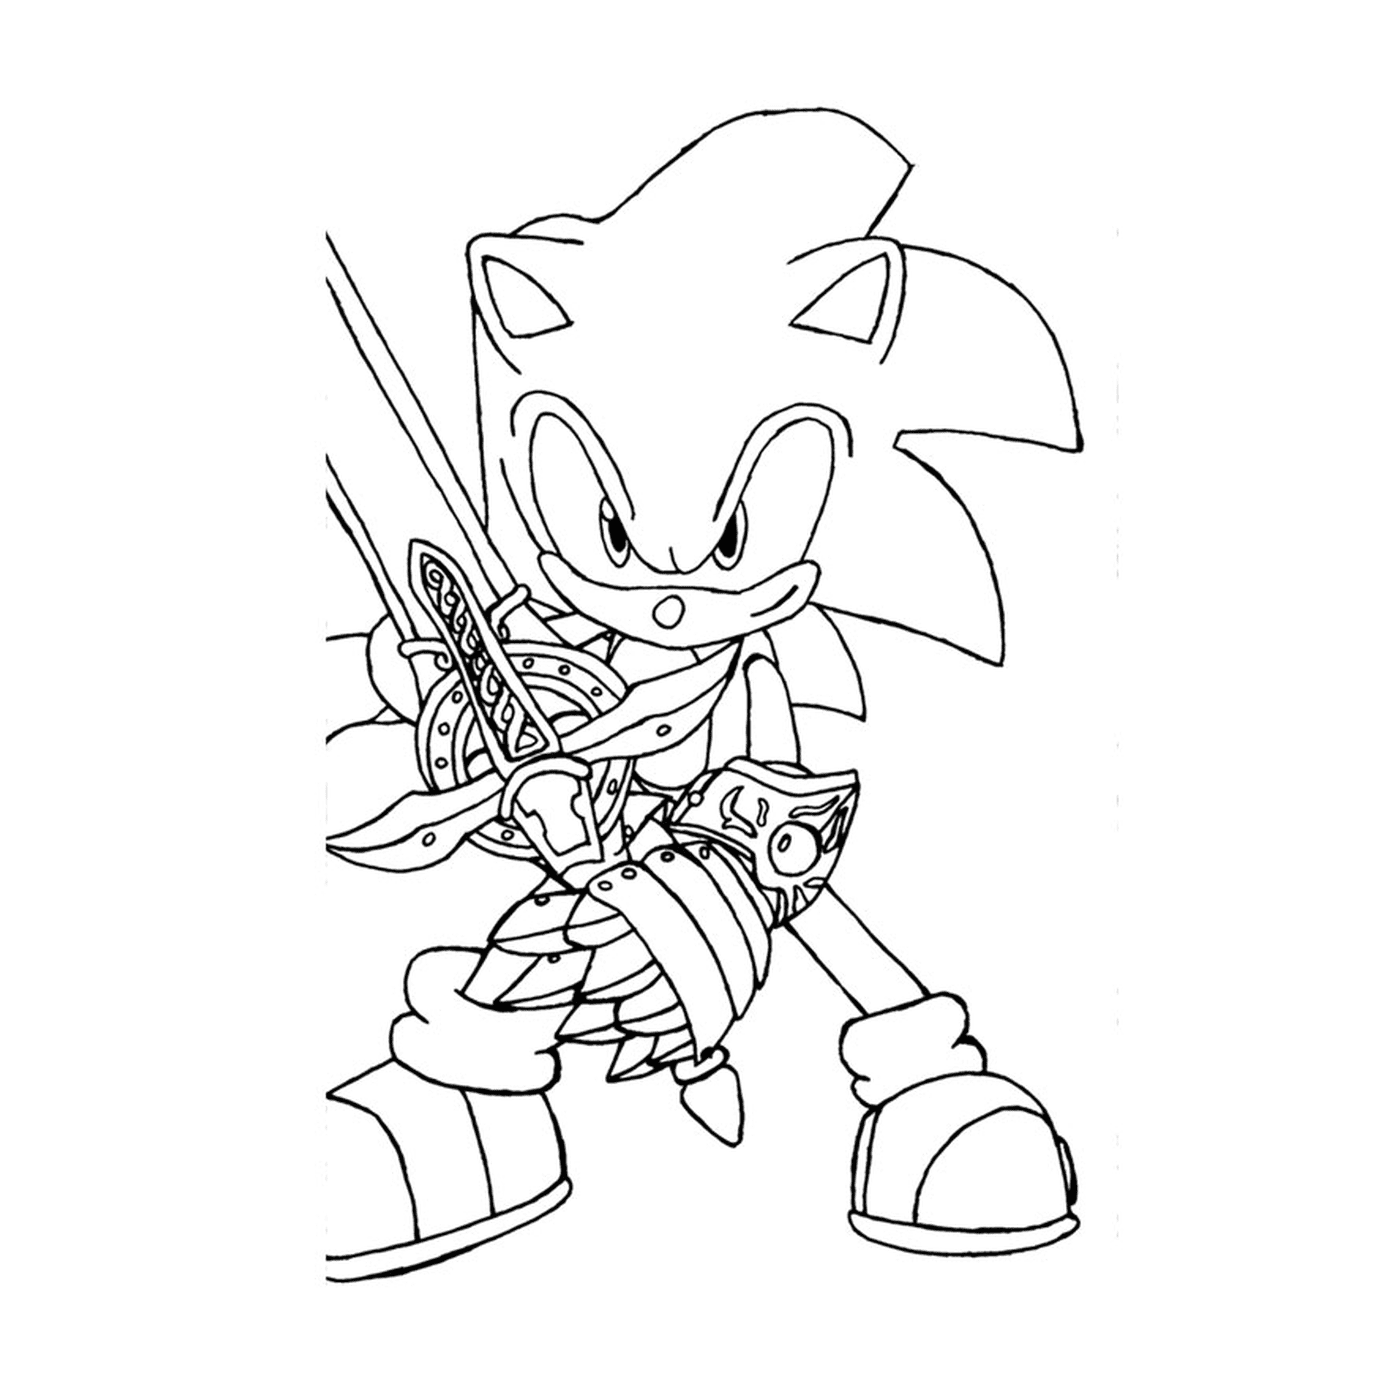  Sonic in movimento acuto 